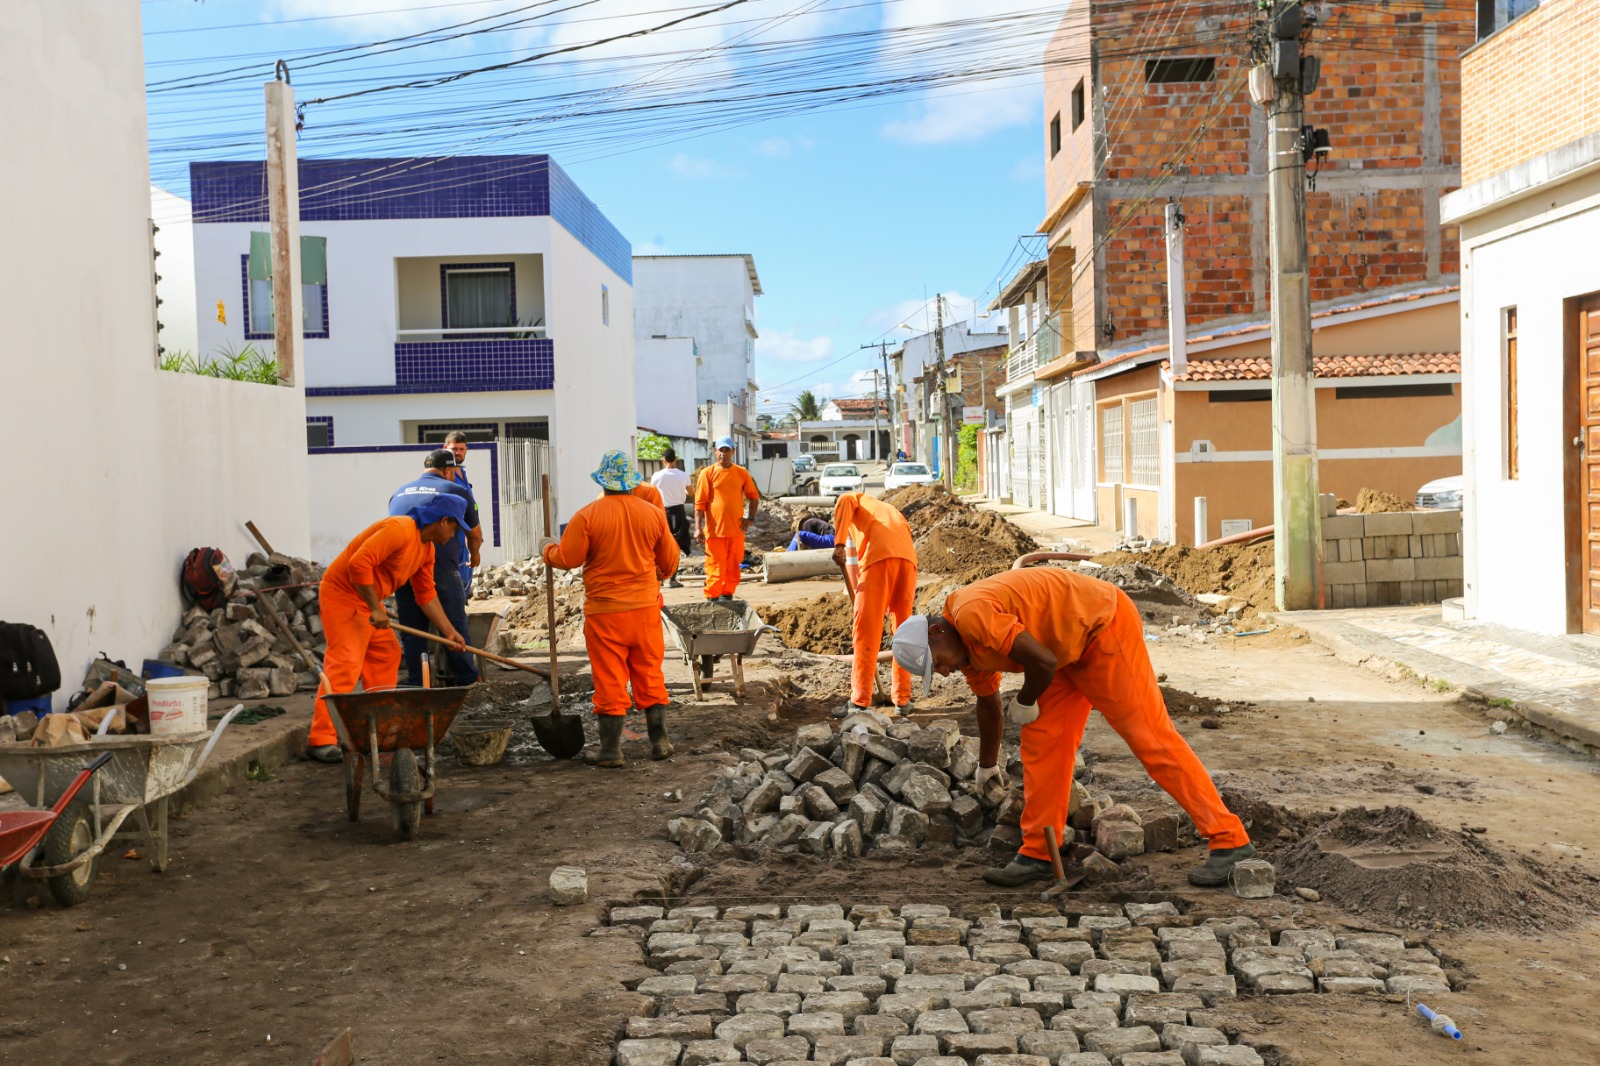 SAJ: Prefeitura implantou nova rede de drenagem na Rua C do loteamento João Tamarindo, no bairro Cajueiro